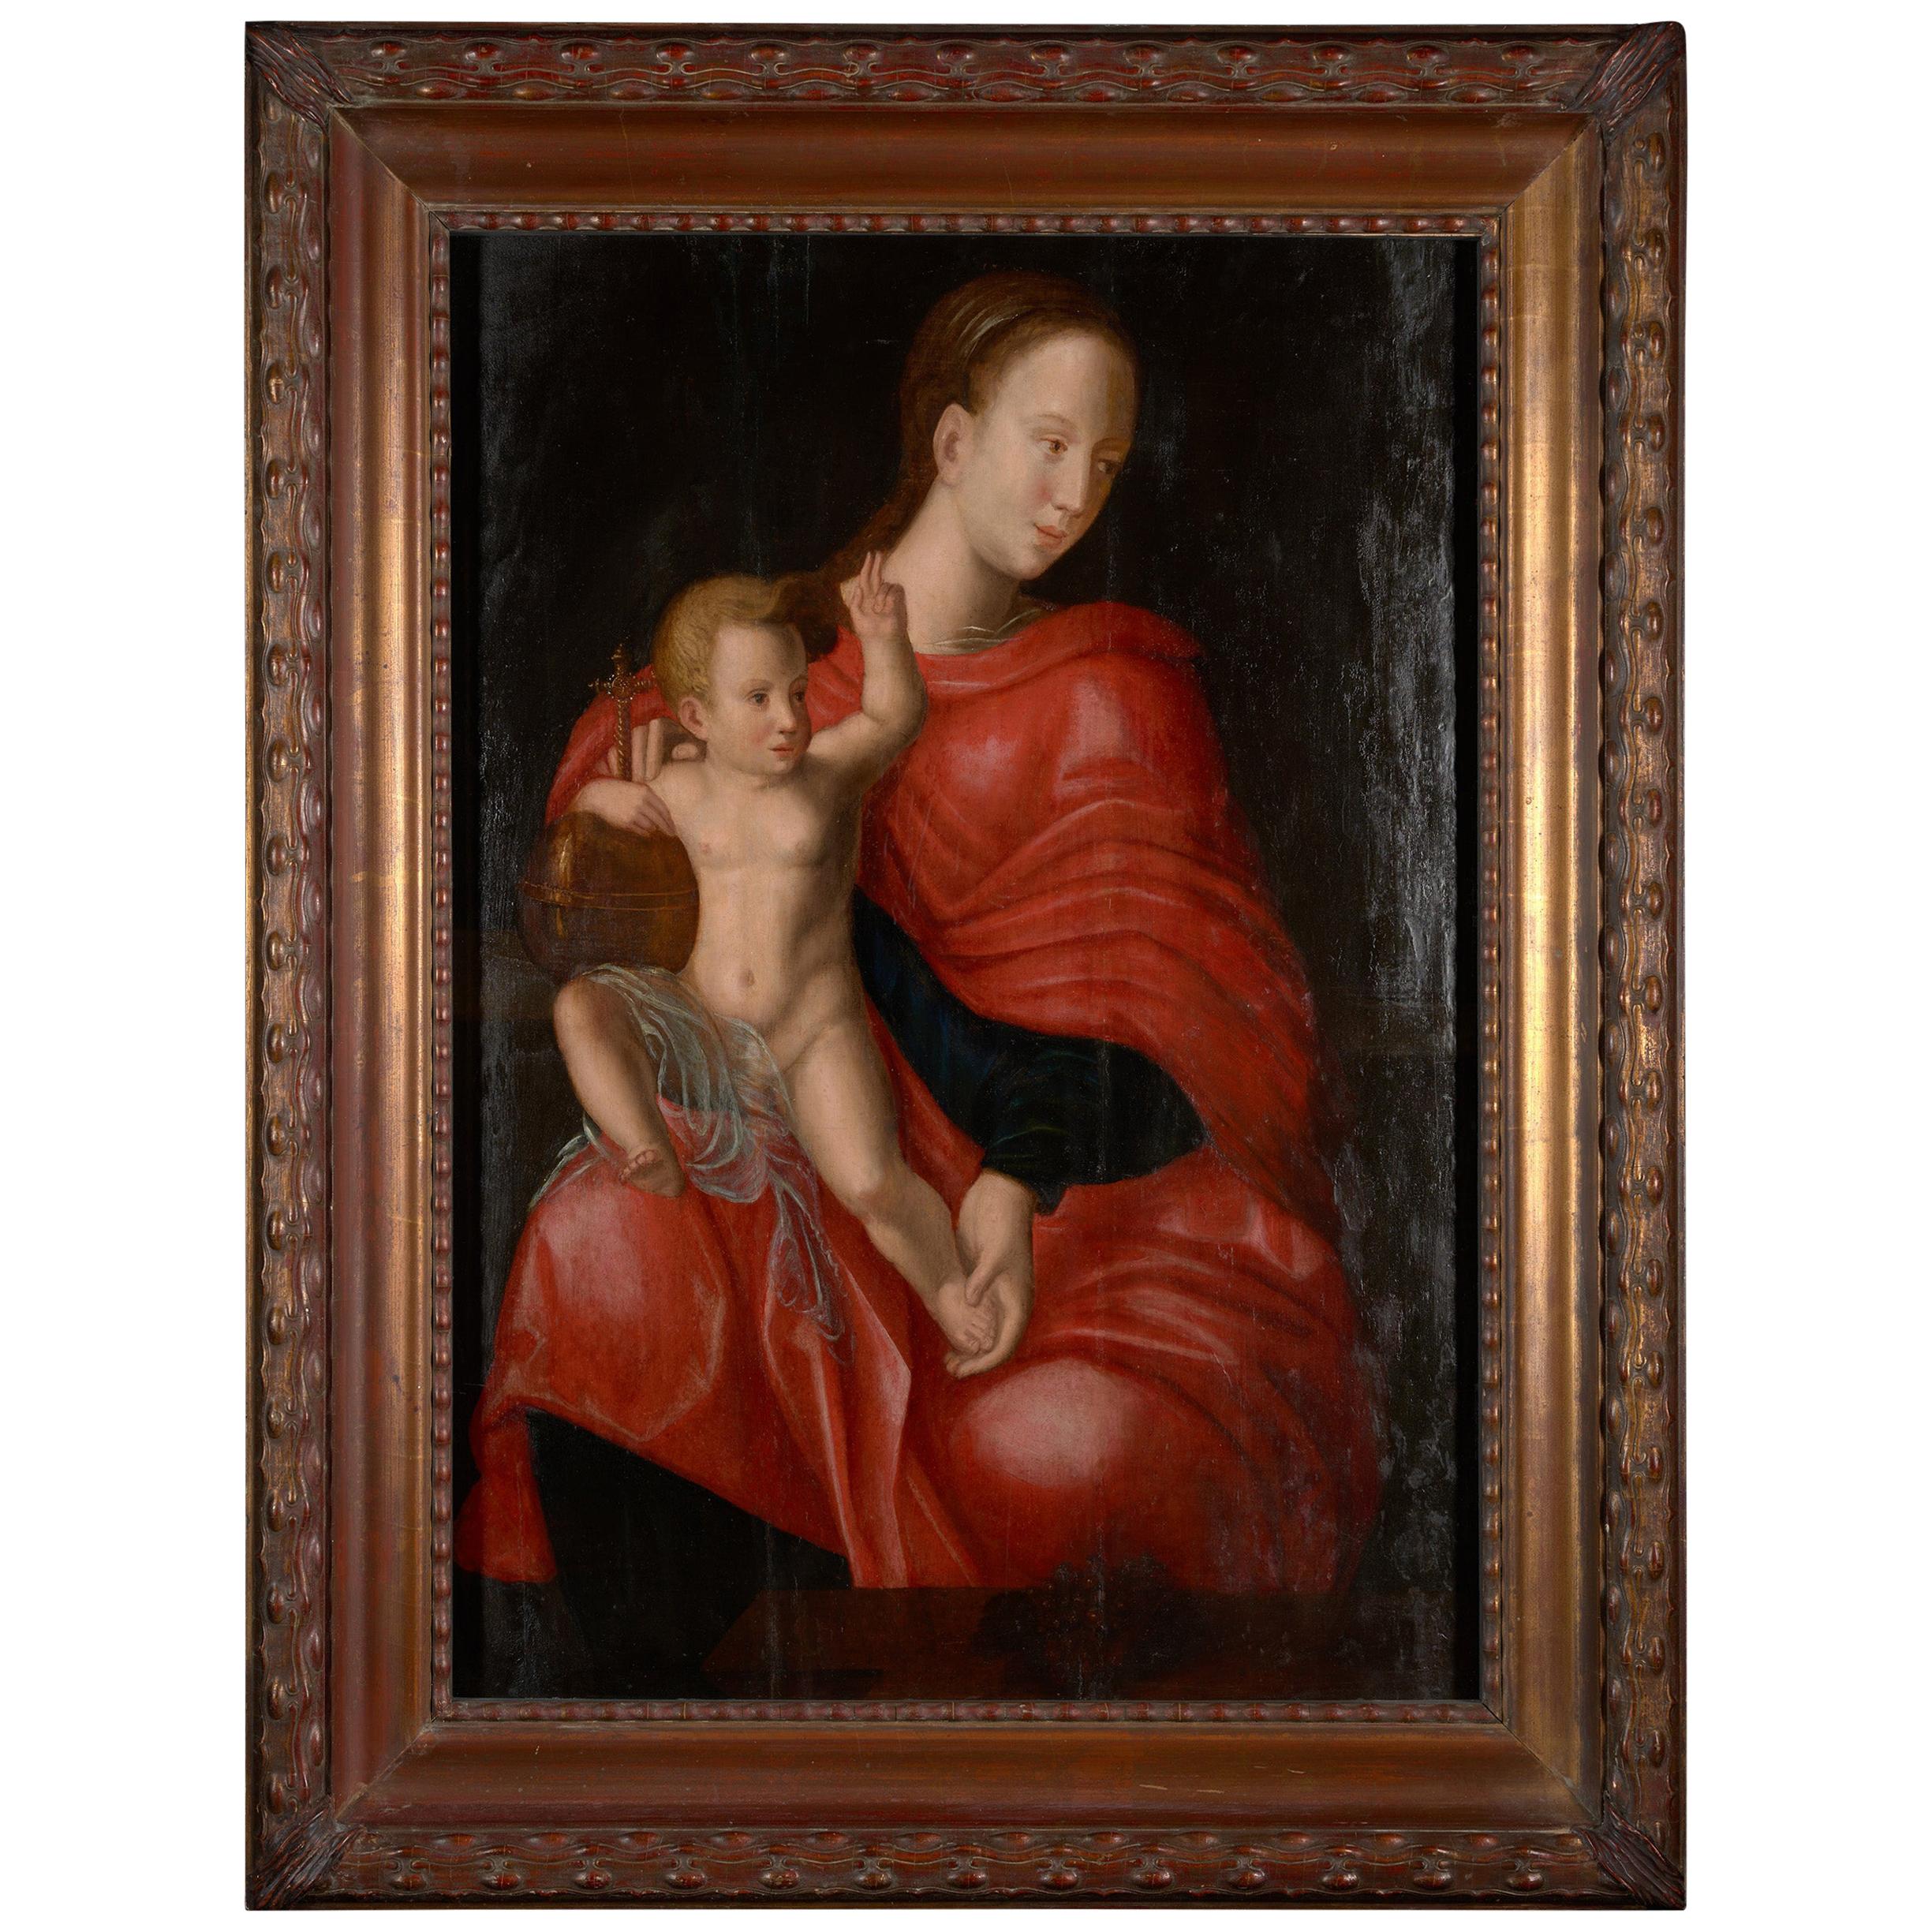 Cette belle peinture du XVIIe siècle a été réalisée dans la dernière partie de la période de la Renaissance européenne, également connue sous le nom de haute renaissance, à la fin du XVIIe siècle. Cette scène représente la Madone avec son enfant.